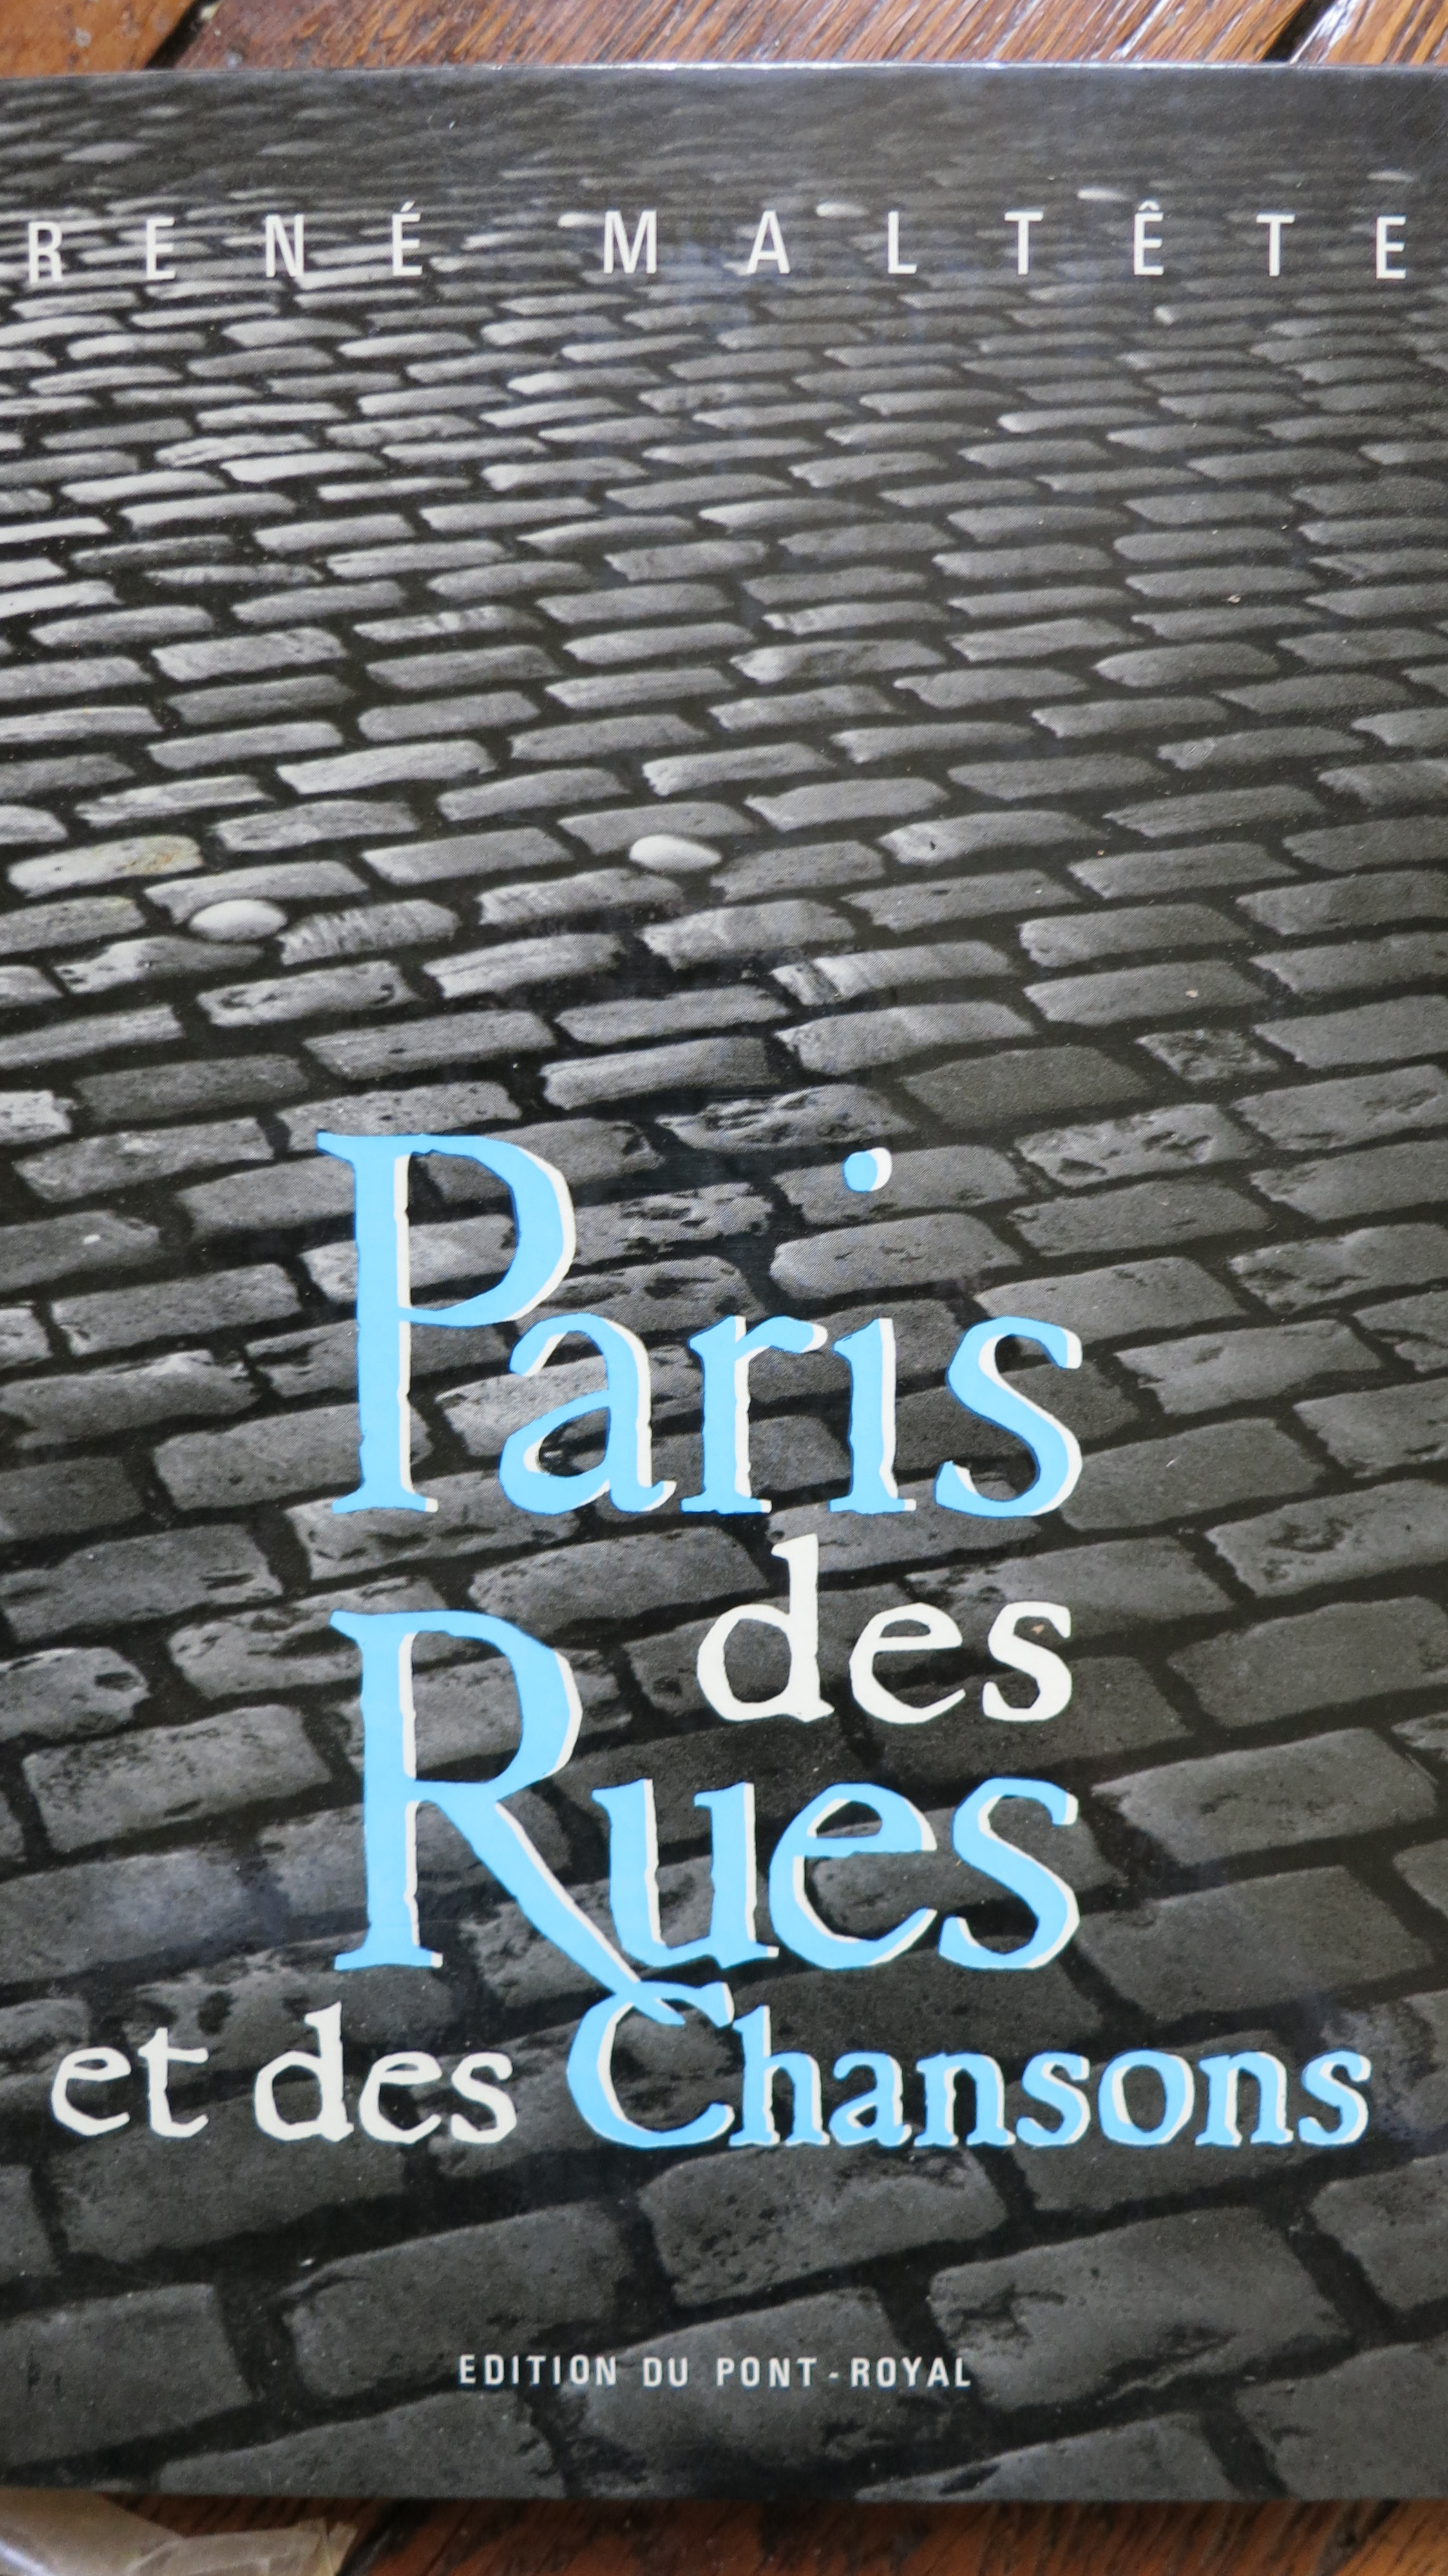 Paris des rues et des chansons